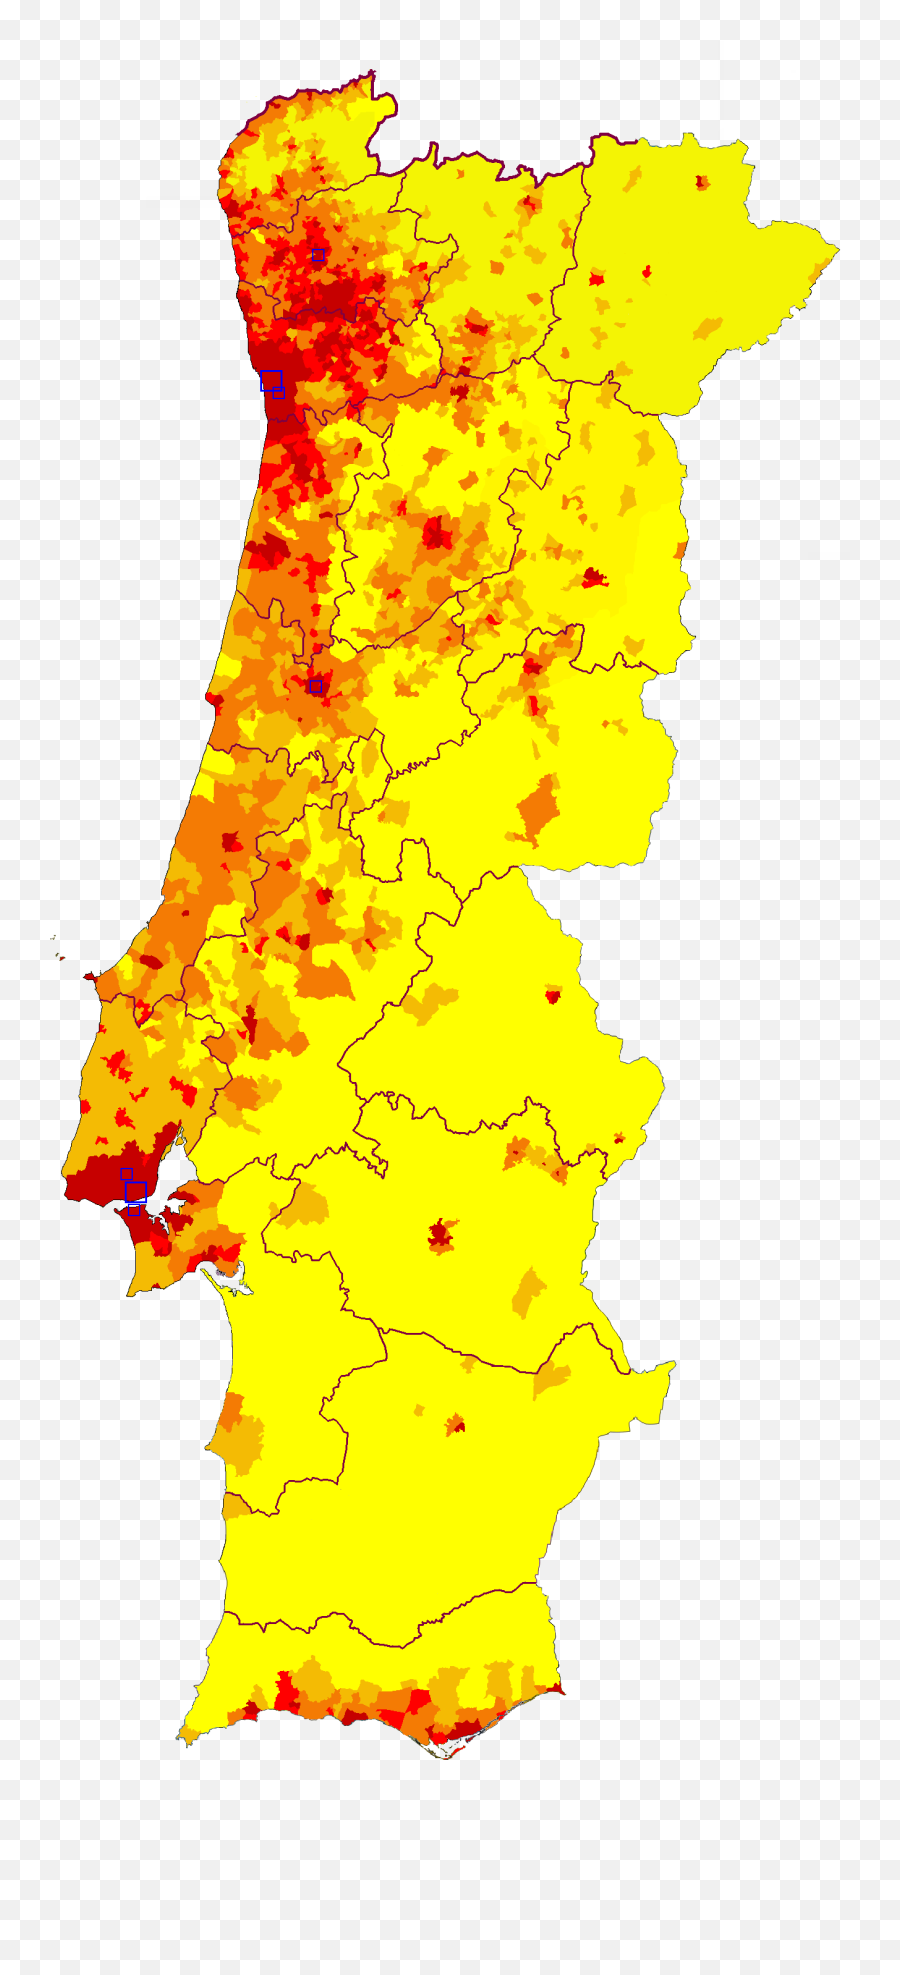 Demographics Of Portugal - Portugal Population Density Emoji,Emoji Recognition Chart